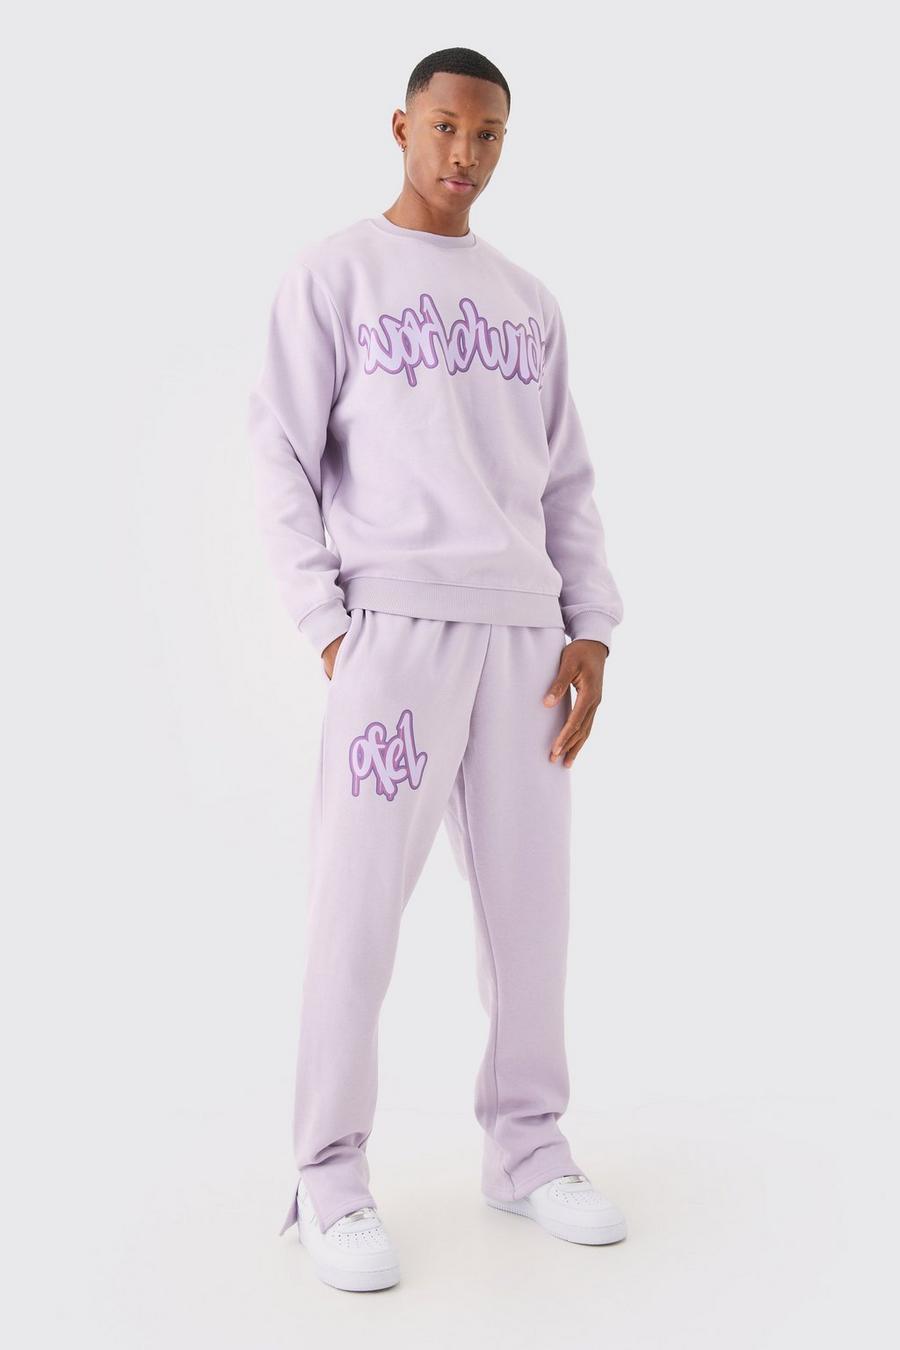 Lilac Mjukisset med sweatshirt och graffititryck